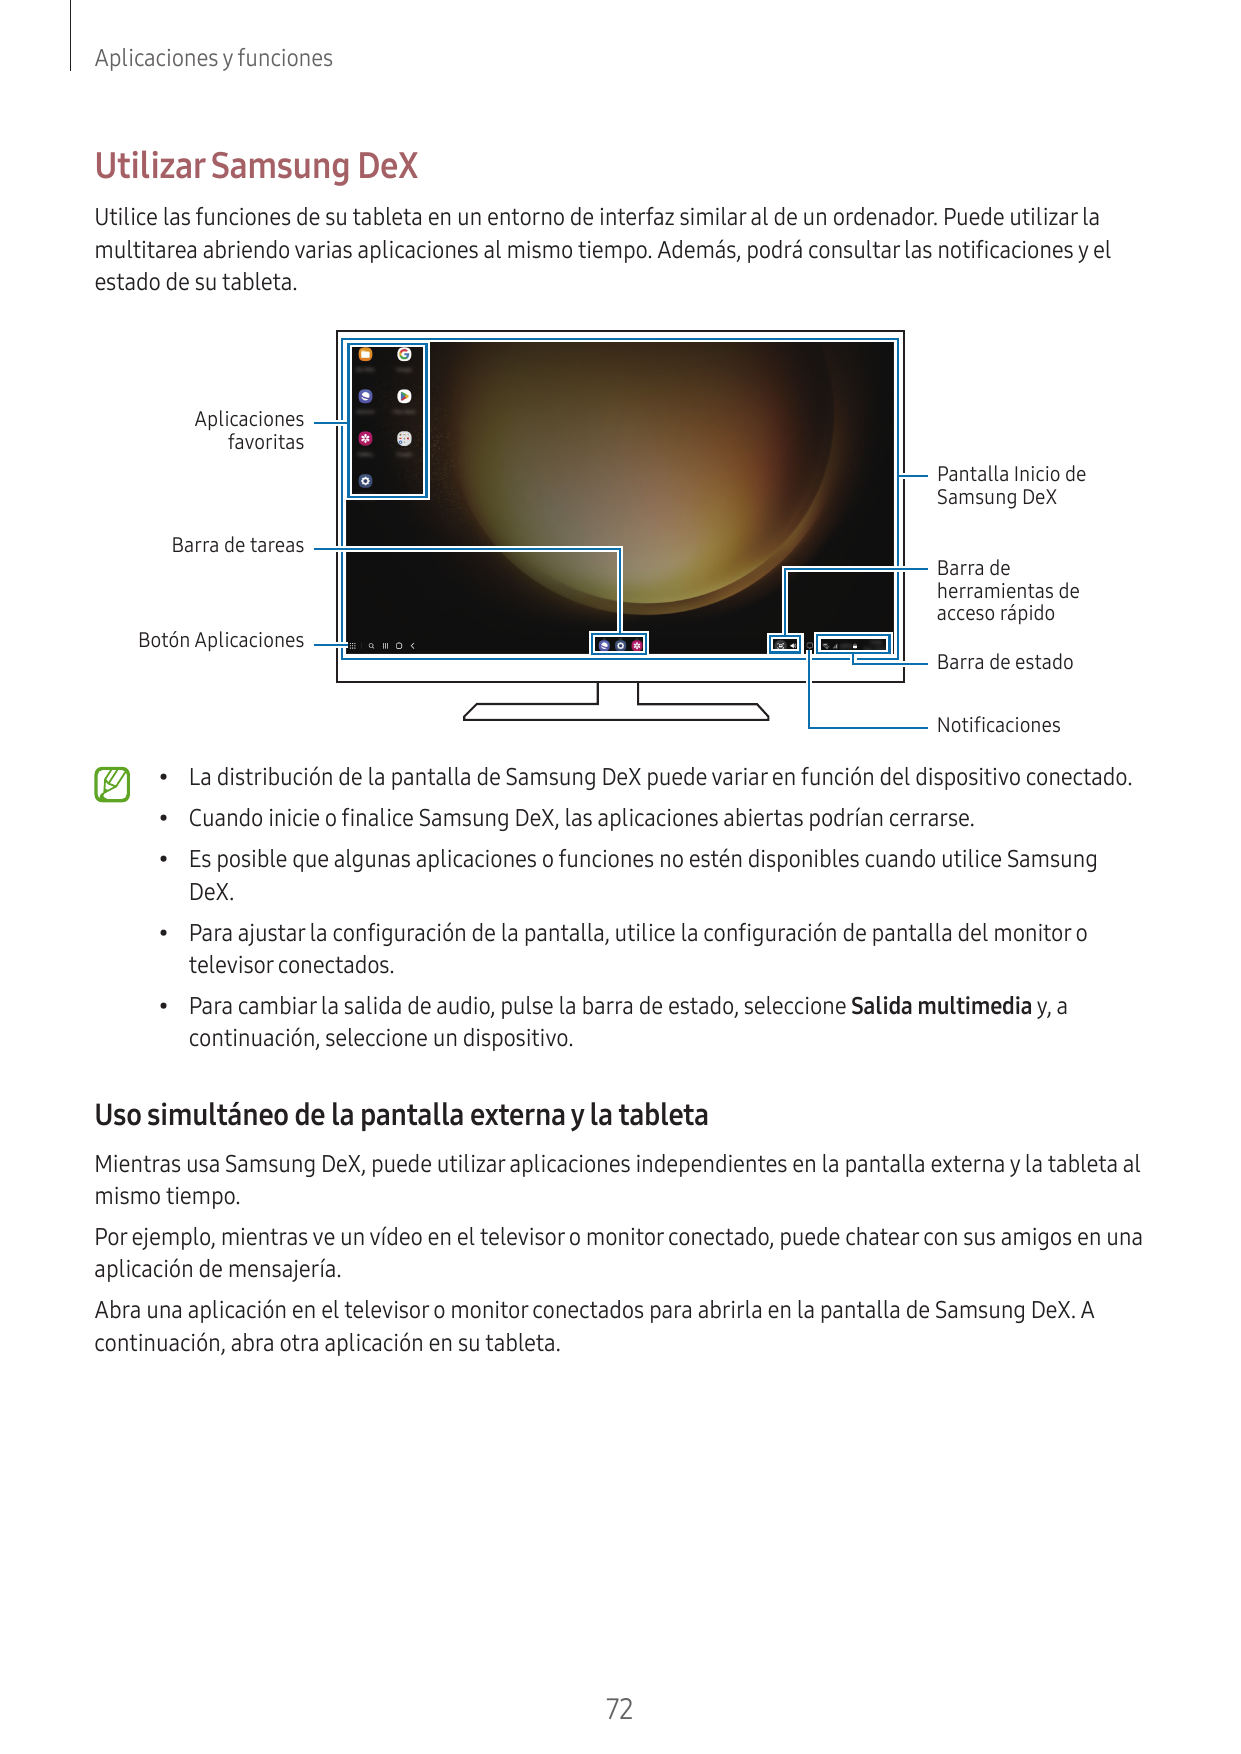 Aplicaciones y funcionesUtilizar Samsung DeXUtilice las funciones de su tableta en un entorno de interfaz similar al de un orden